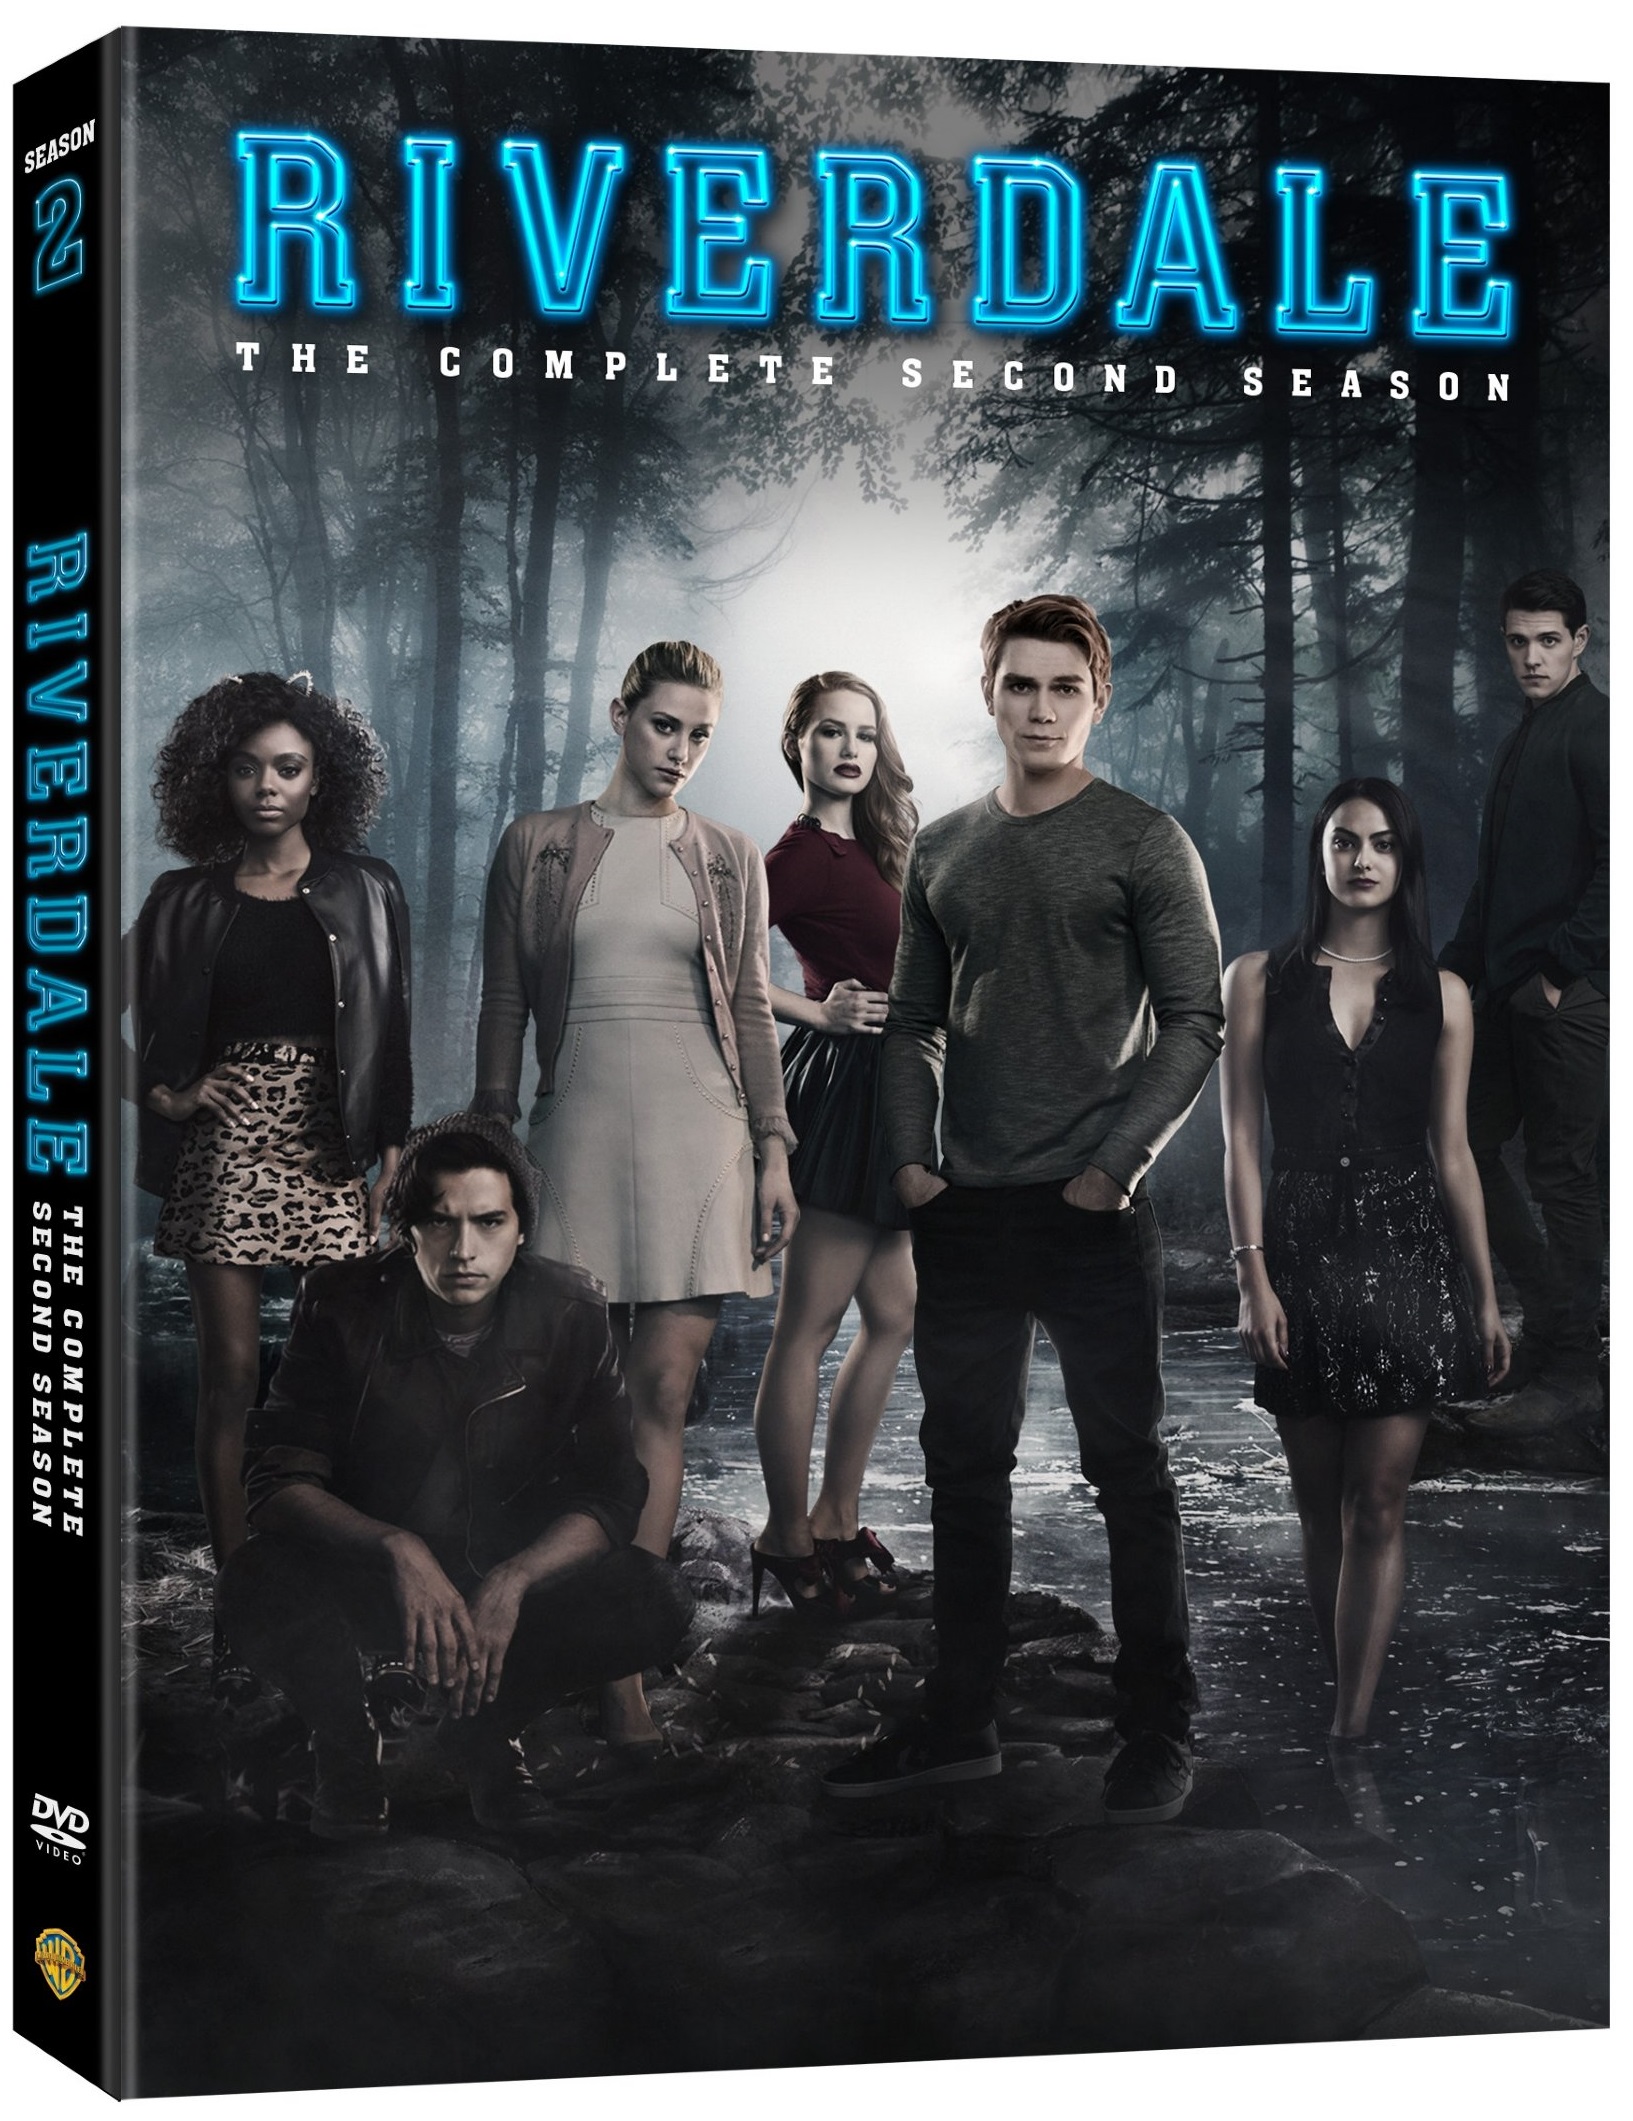 Riverdale Season 2 DVD release August Warner Bros